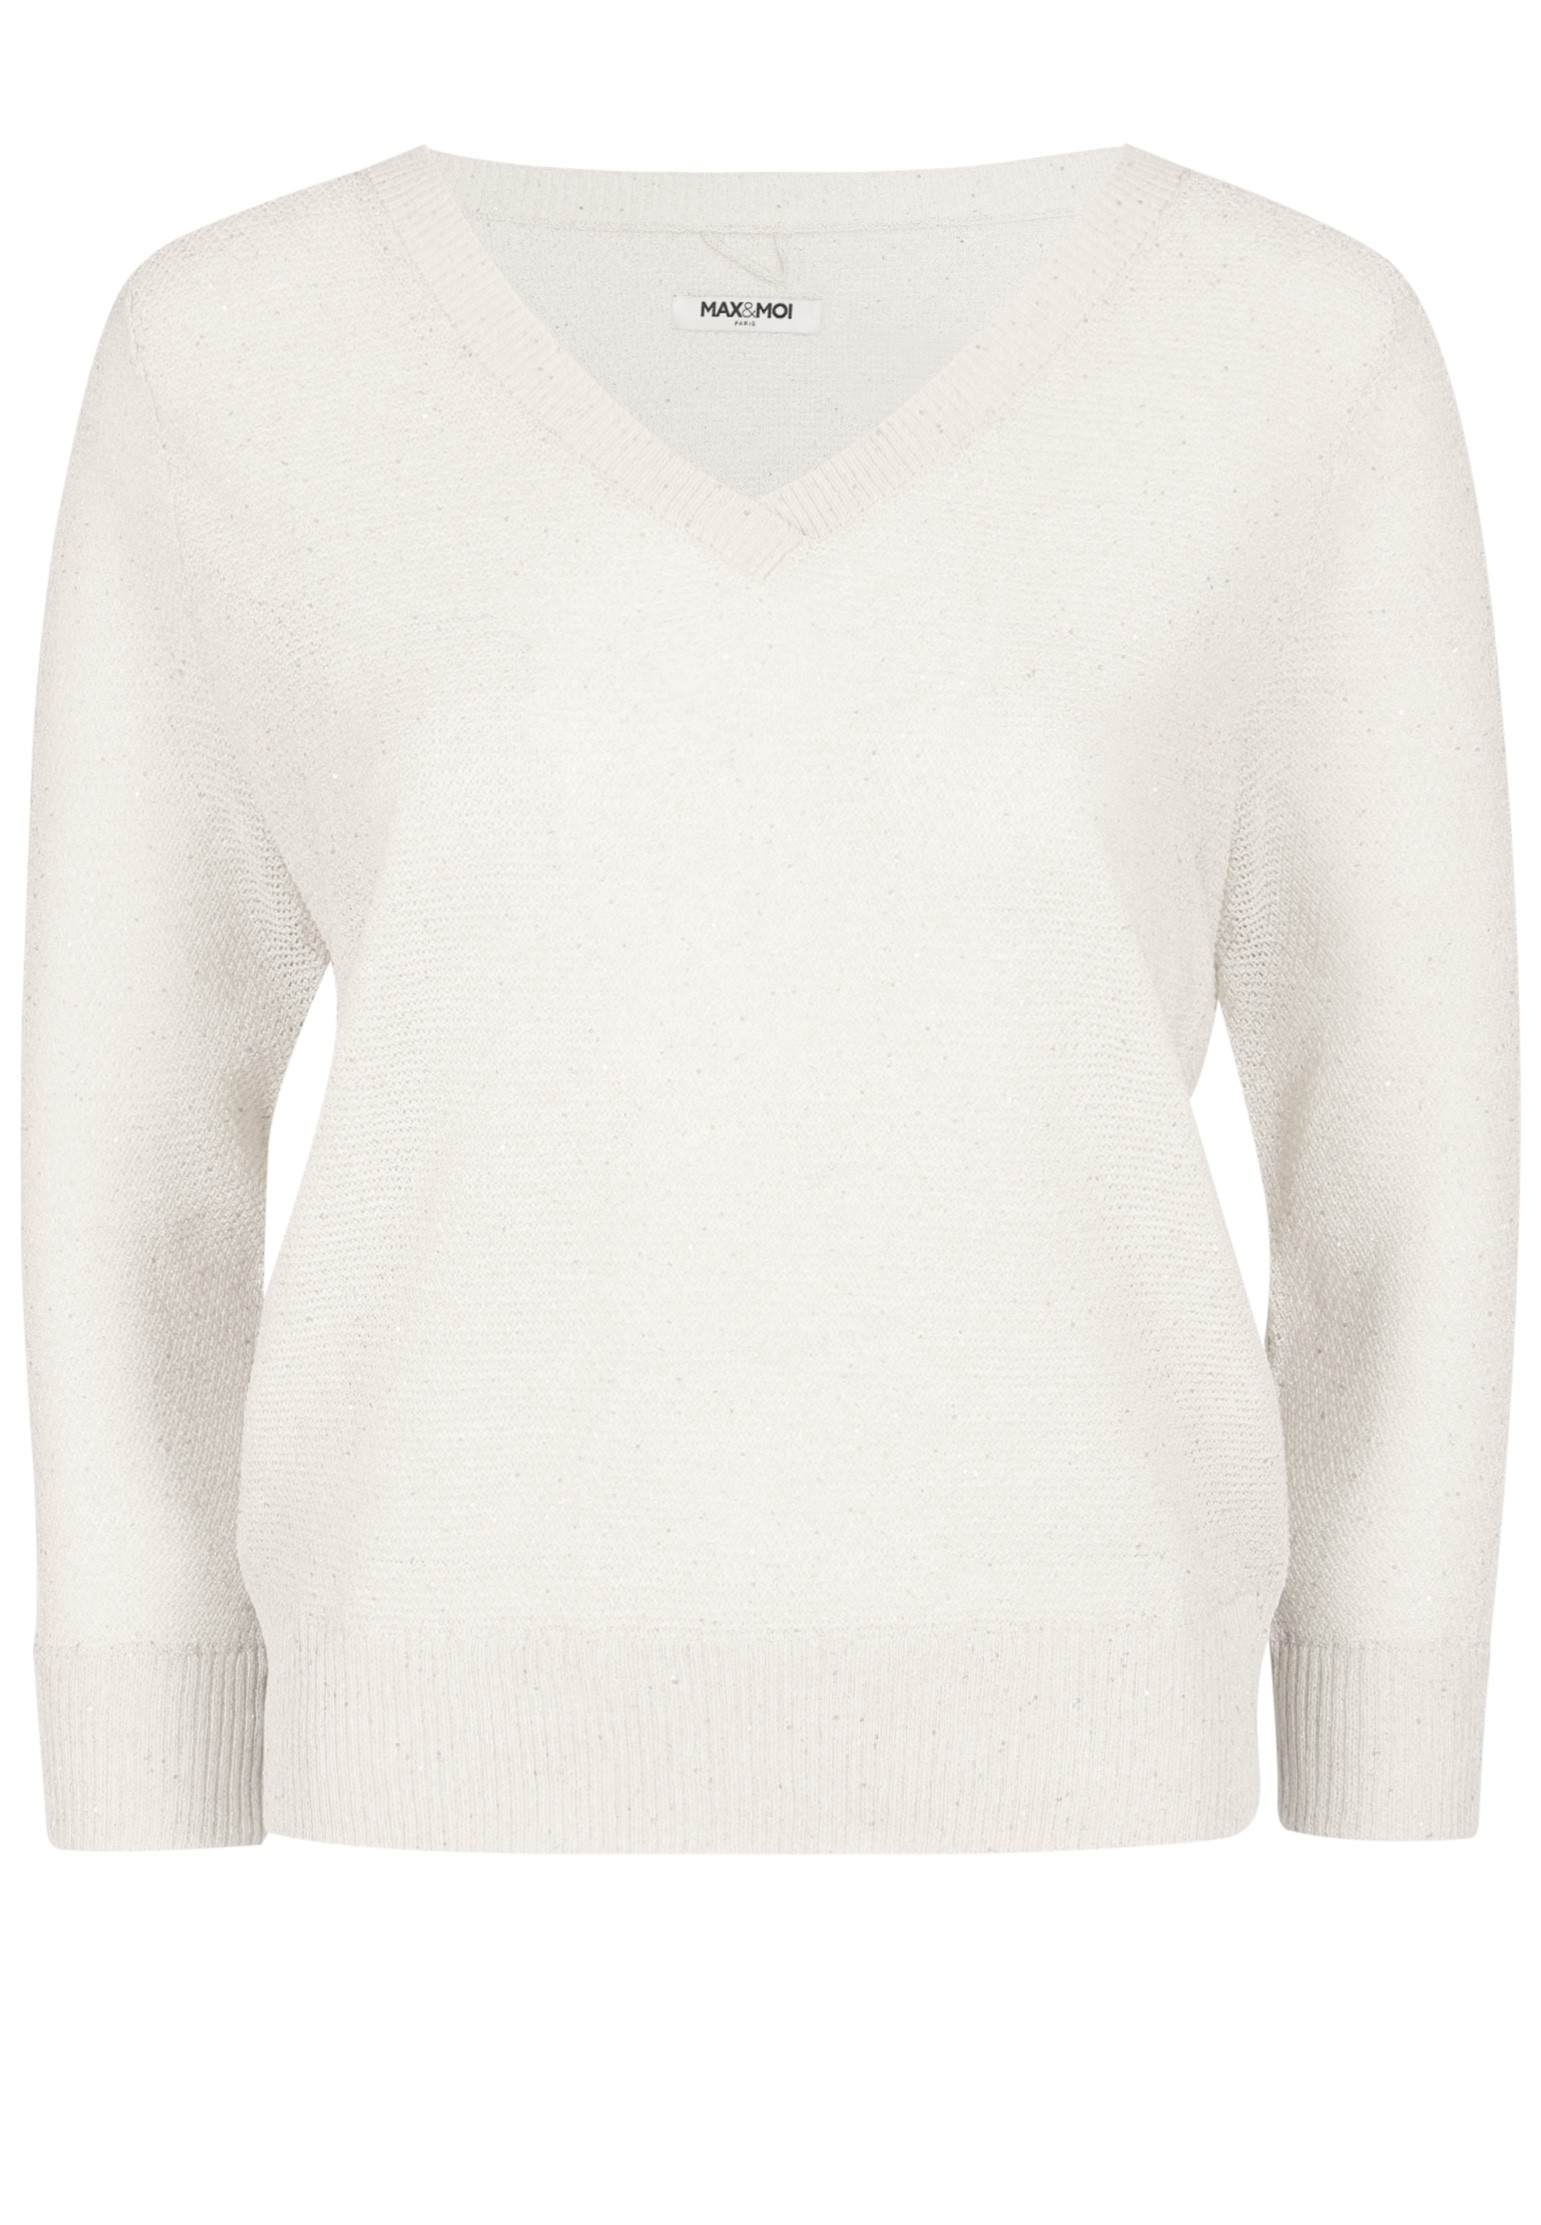 Пуловер женский 128109 белый S MAX & MOI. Цвет: белый